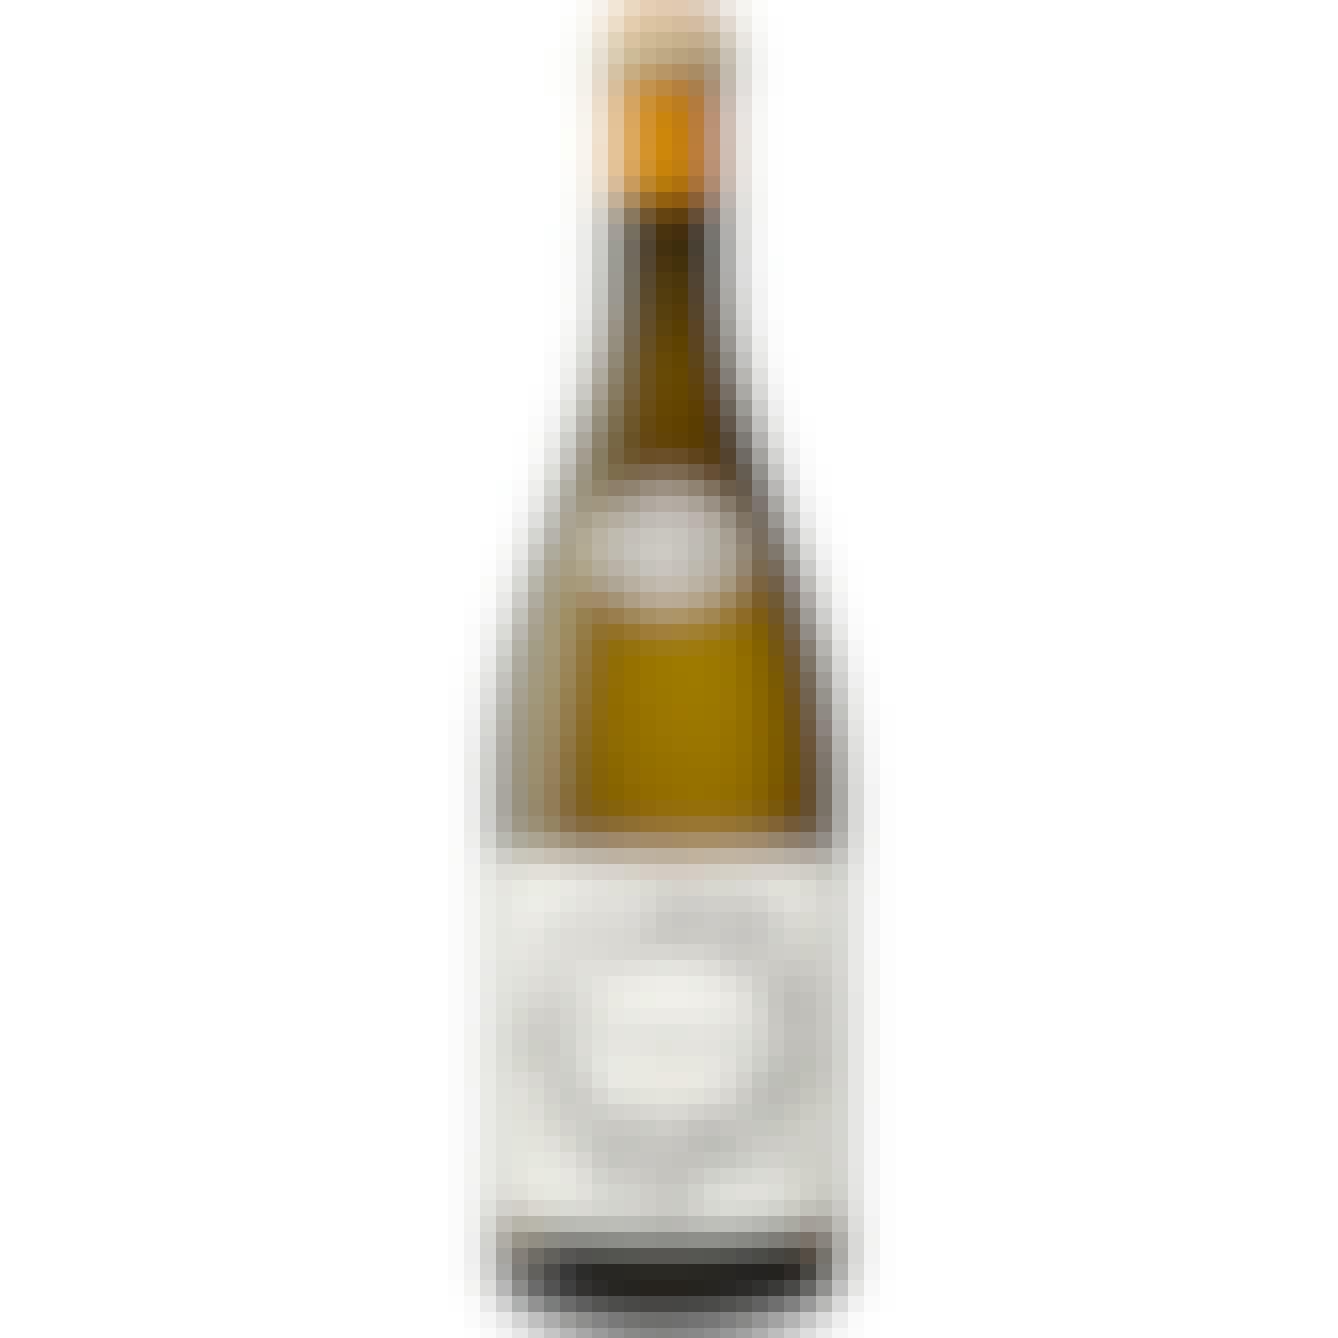 Averaen Willamette Valley Chardonnay 2018 750ml